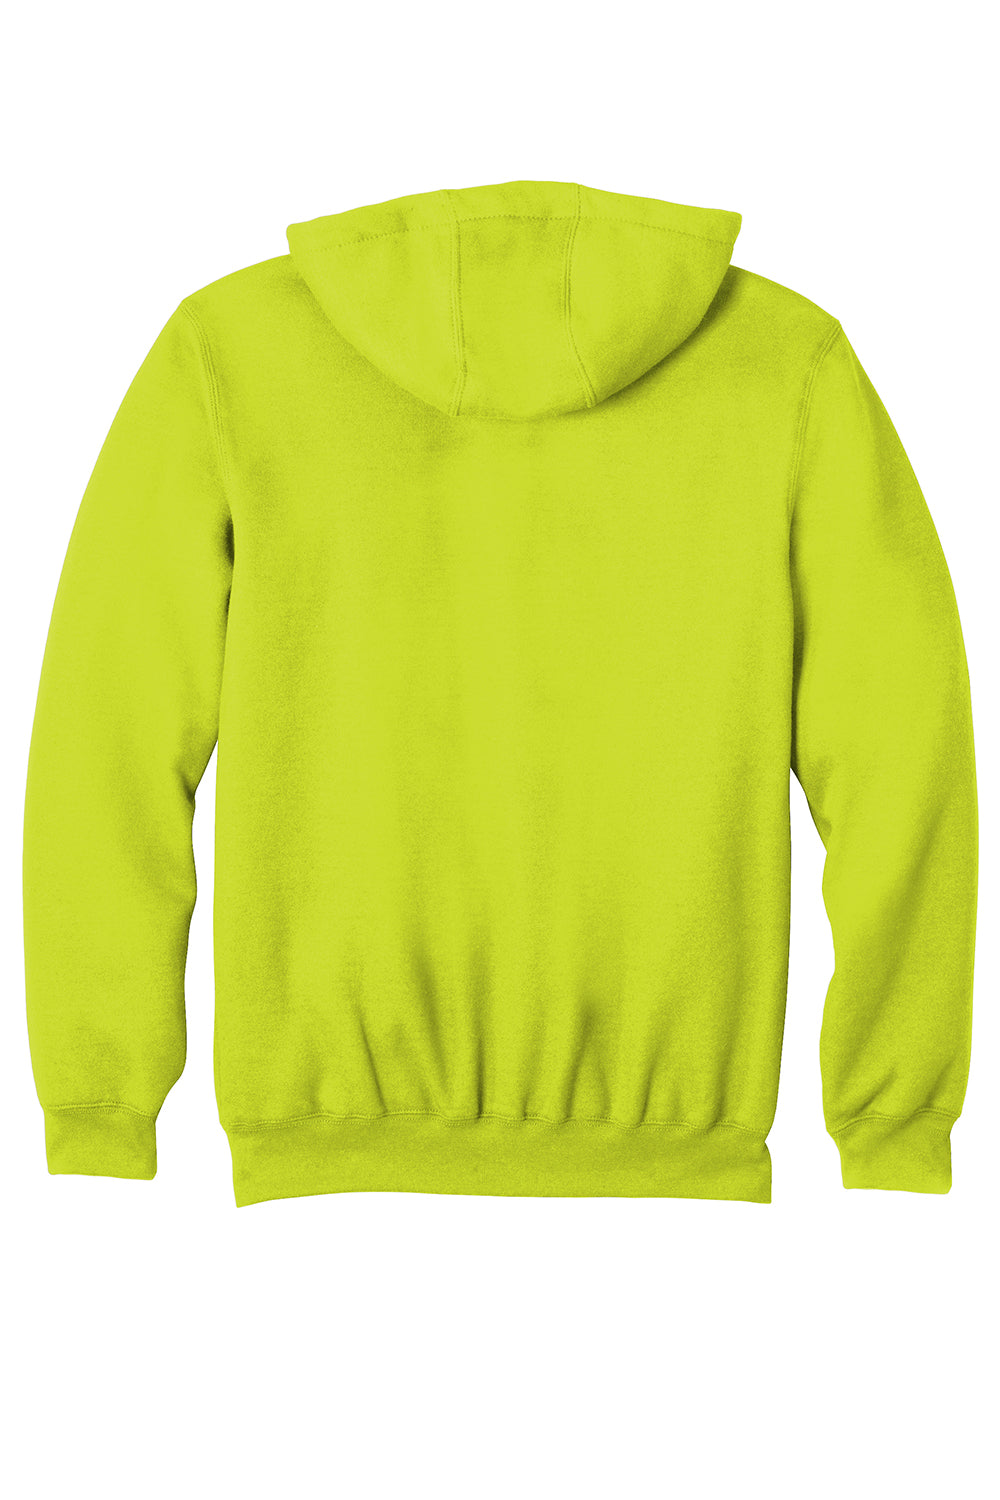 Carhartt CTK122 Mens Full Zip Hooded Sweatshirt Hoodie Brite Lime Green Flat Back